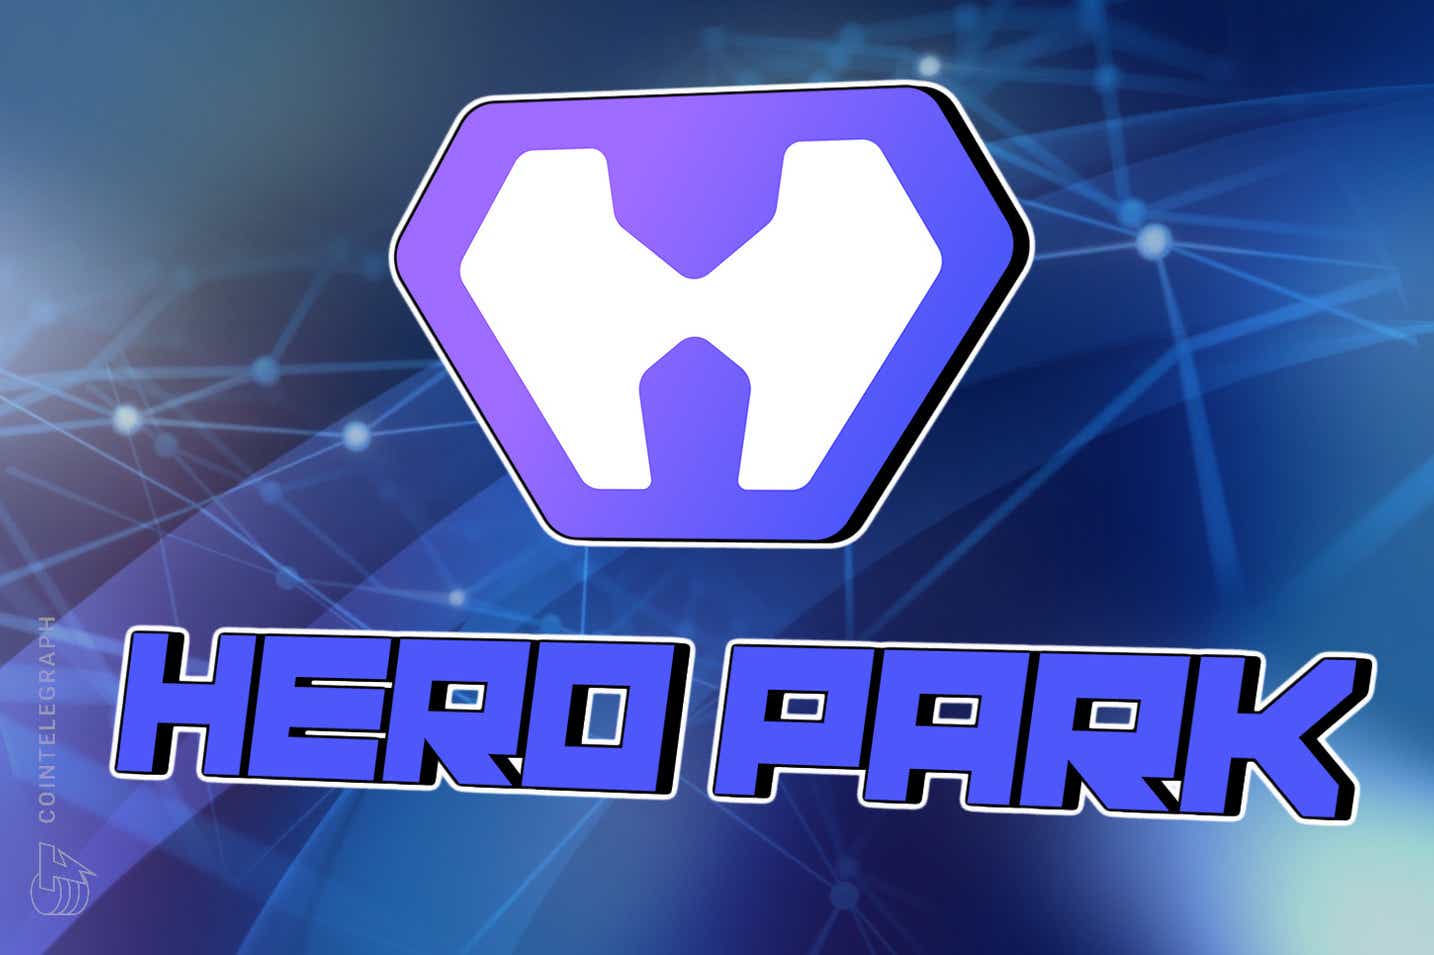 HeroPark bổ sung thêm chiều hướng mới cho trò chơi bằng cách giới thiệu GameFi dựa trên NFT và hệ sinh thái chơi để kiếm tiền